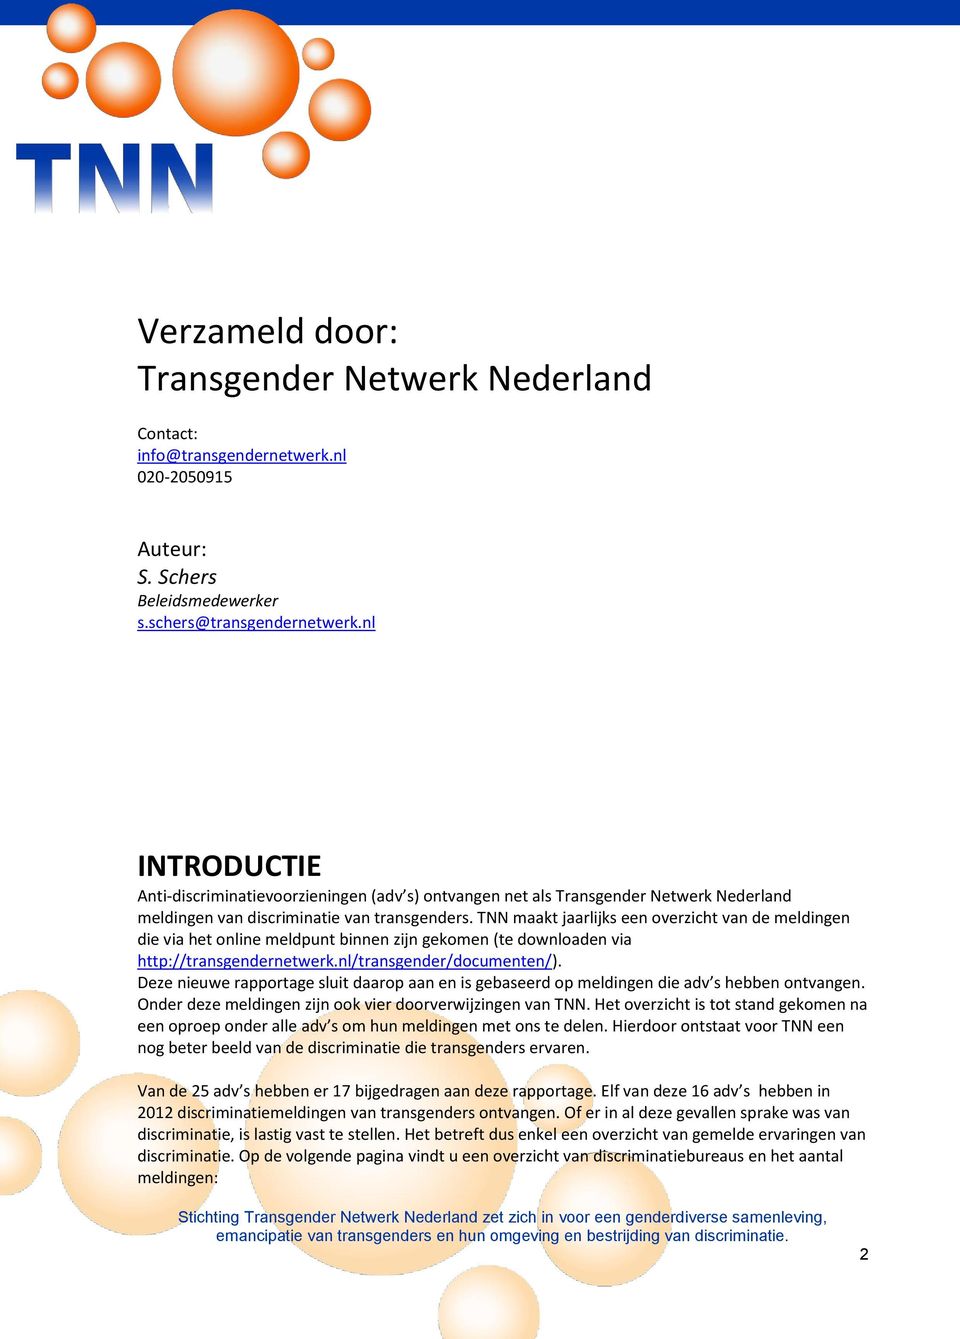 TNN maakt jaarlijks een overzicht van de meldingen die via het online meldpunt binnen zijn gekomen (te downloaden via http://transgendernetwerk.nl/transgender/documenten/).